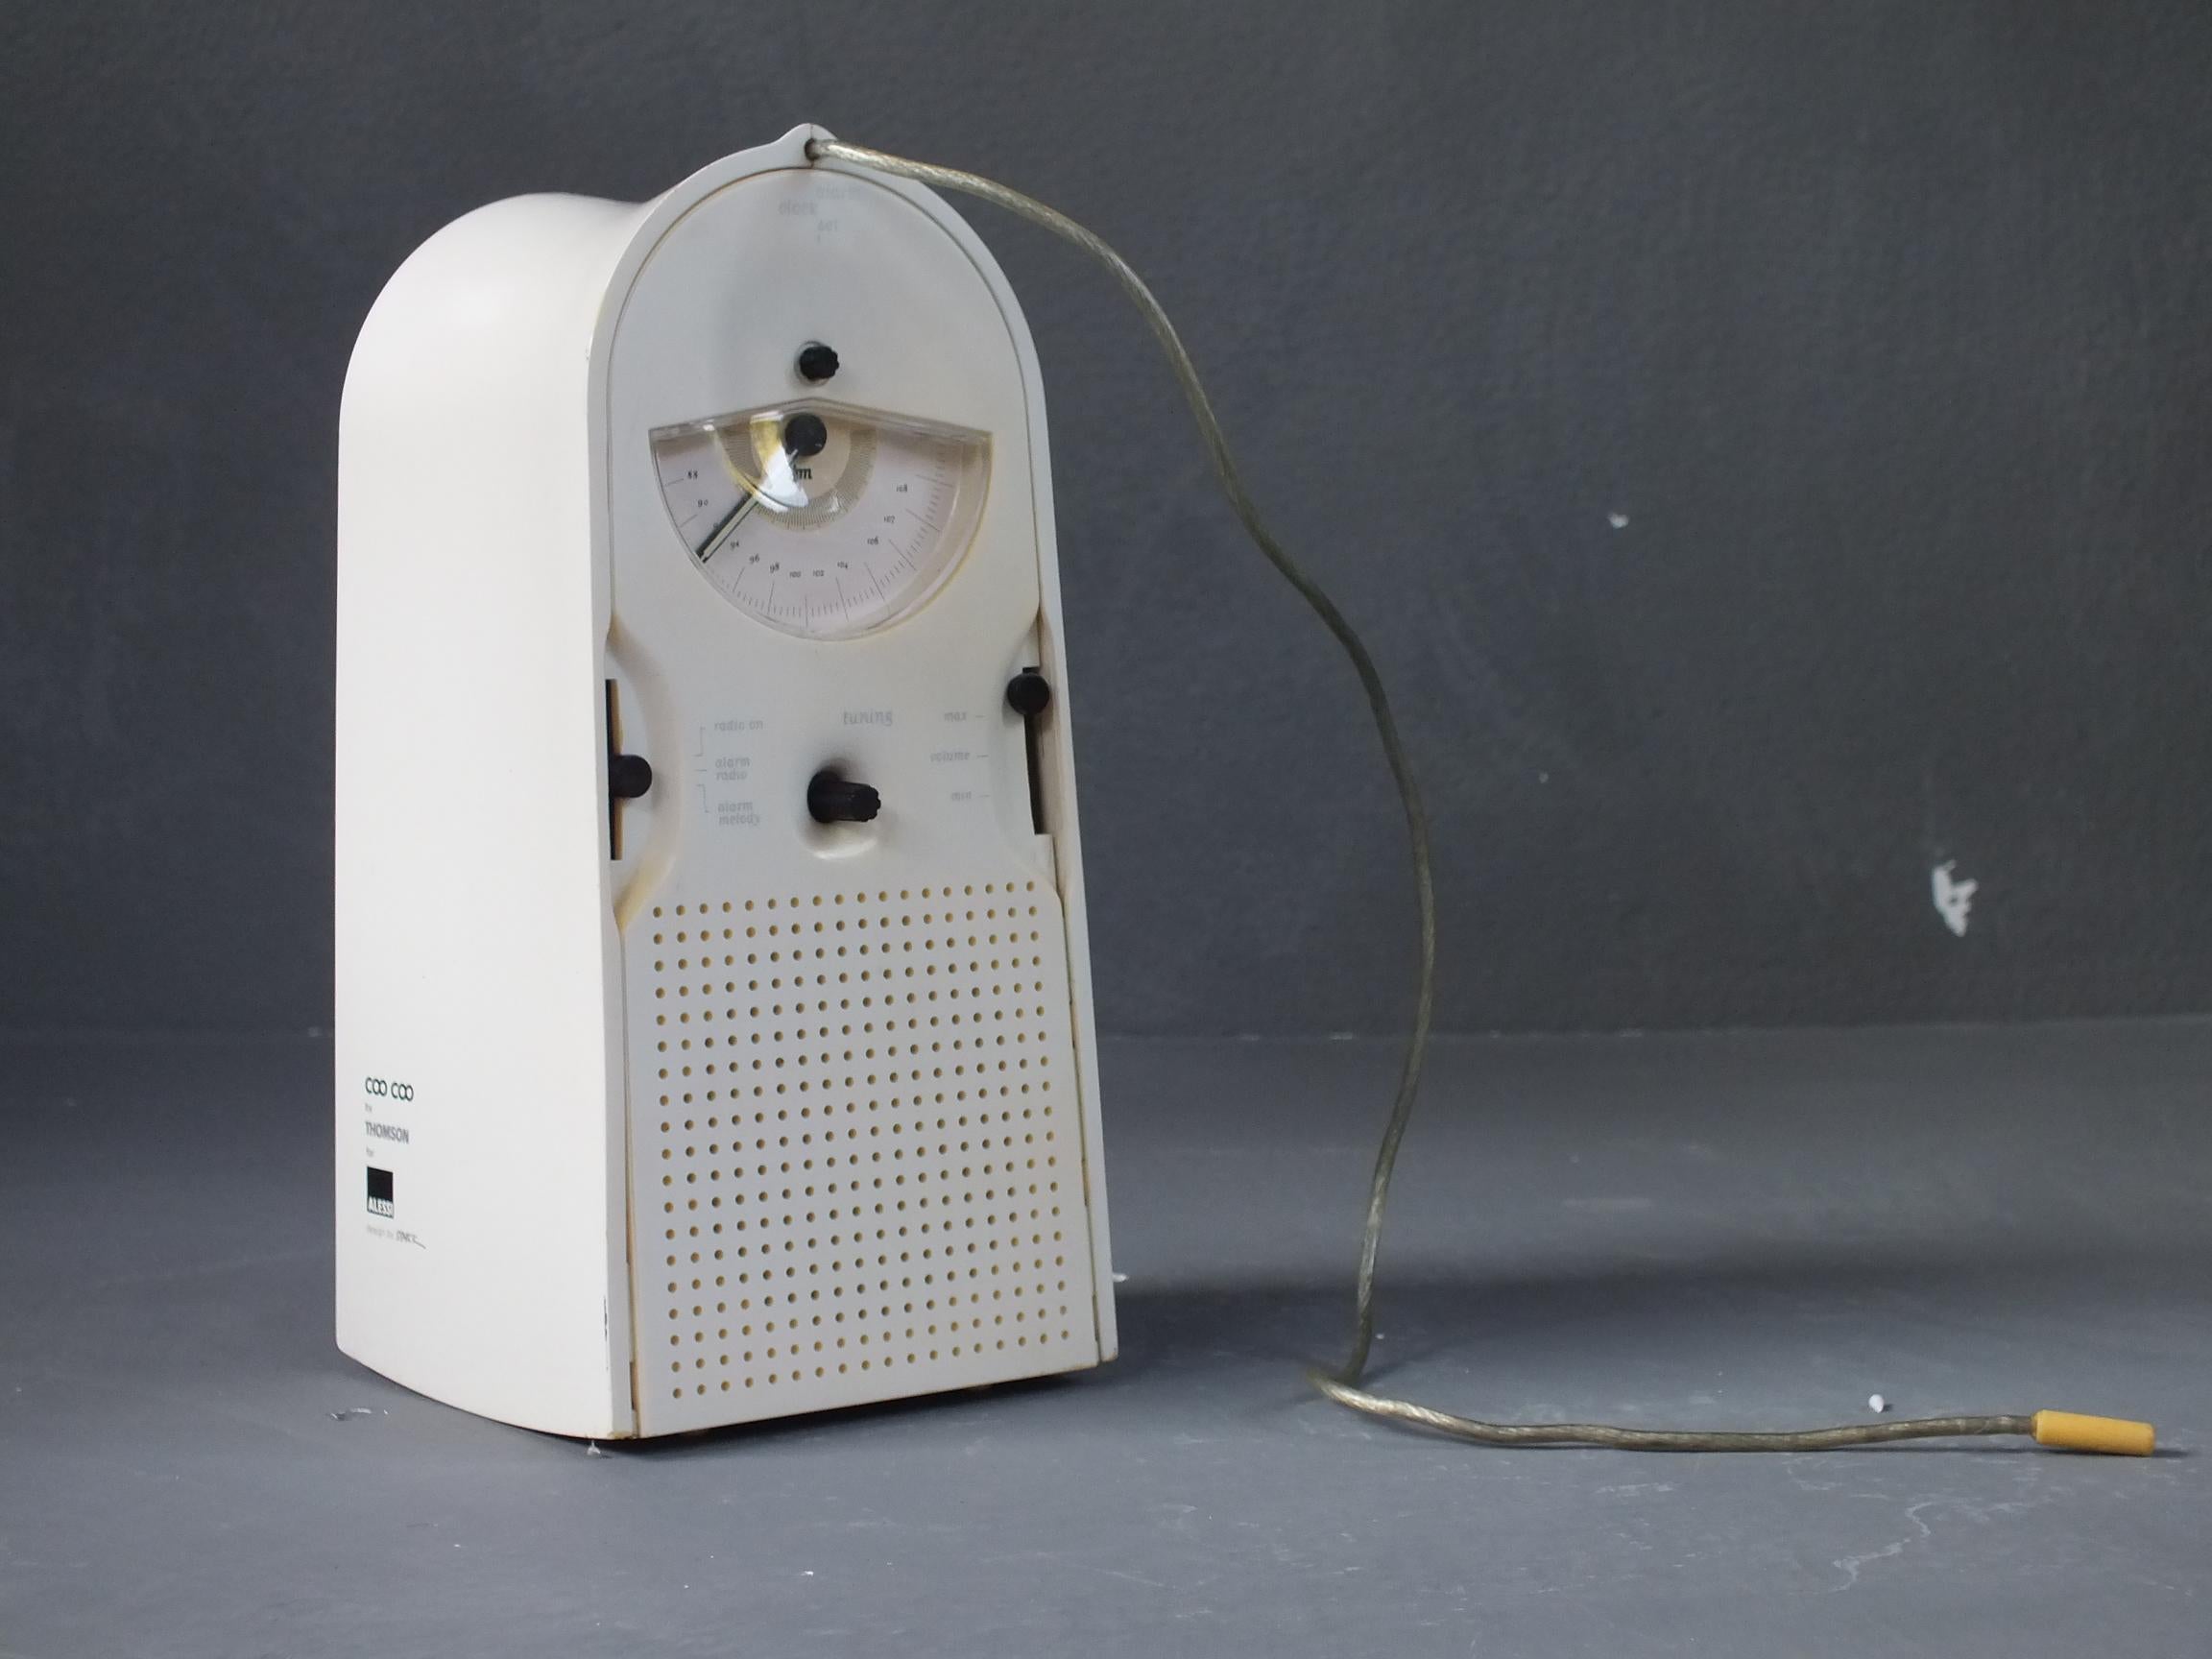 Fin du 20e siècle Thomson prod. L'horloge radio coo par Pilippe Starck design, année 1994 en vente